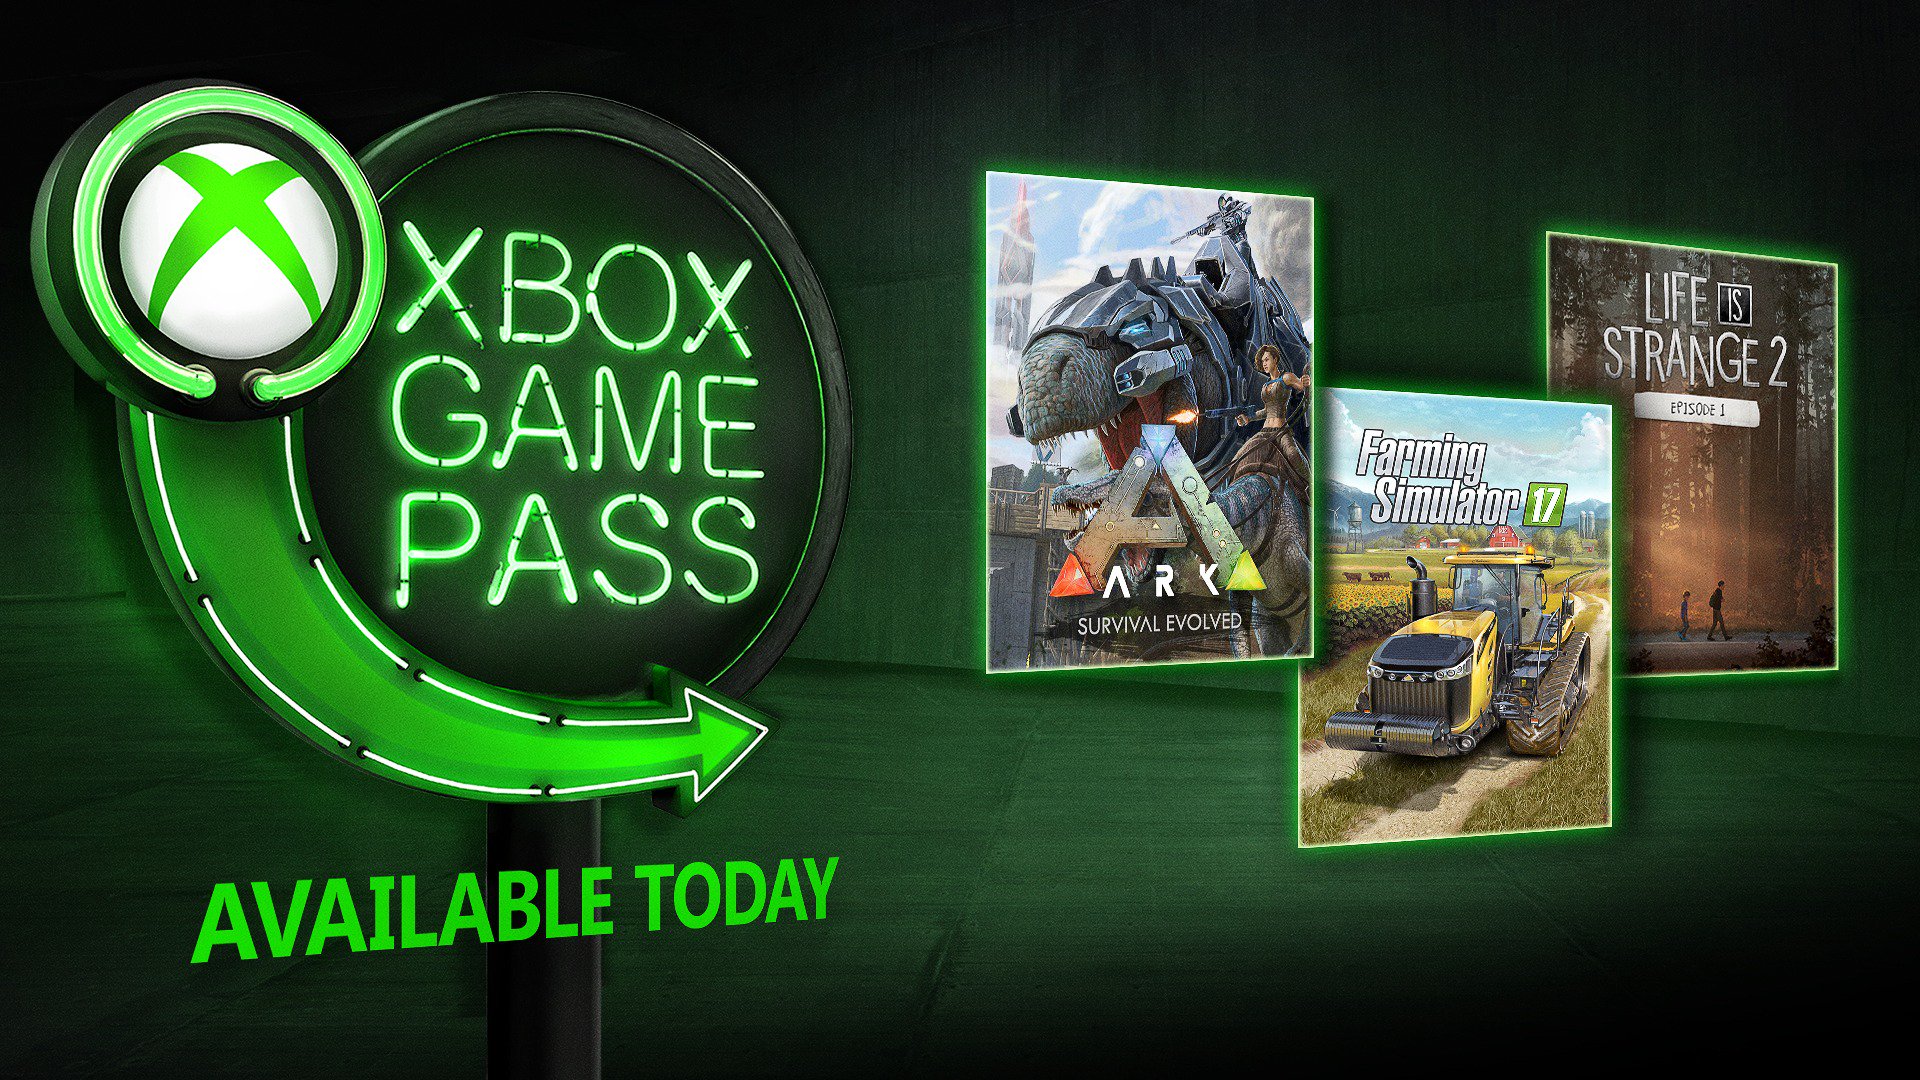 Лучшее в game pass. Xbox игры жизни. Лучшие игры Xbox game Pass. Игры на двоих в Xbox game Pass. Реклама хбокс игры.